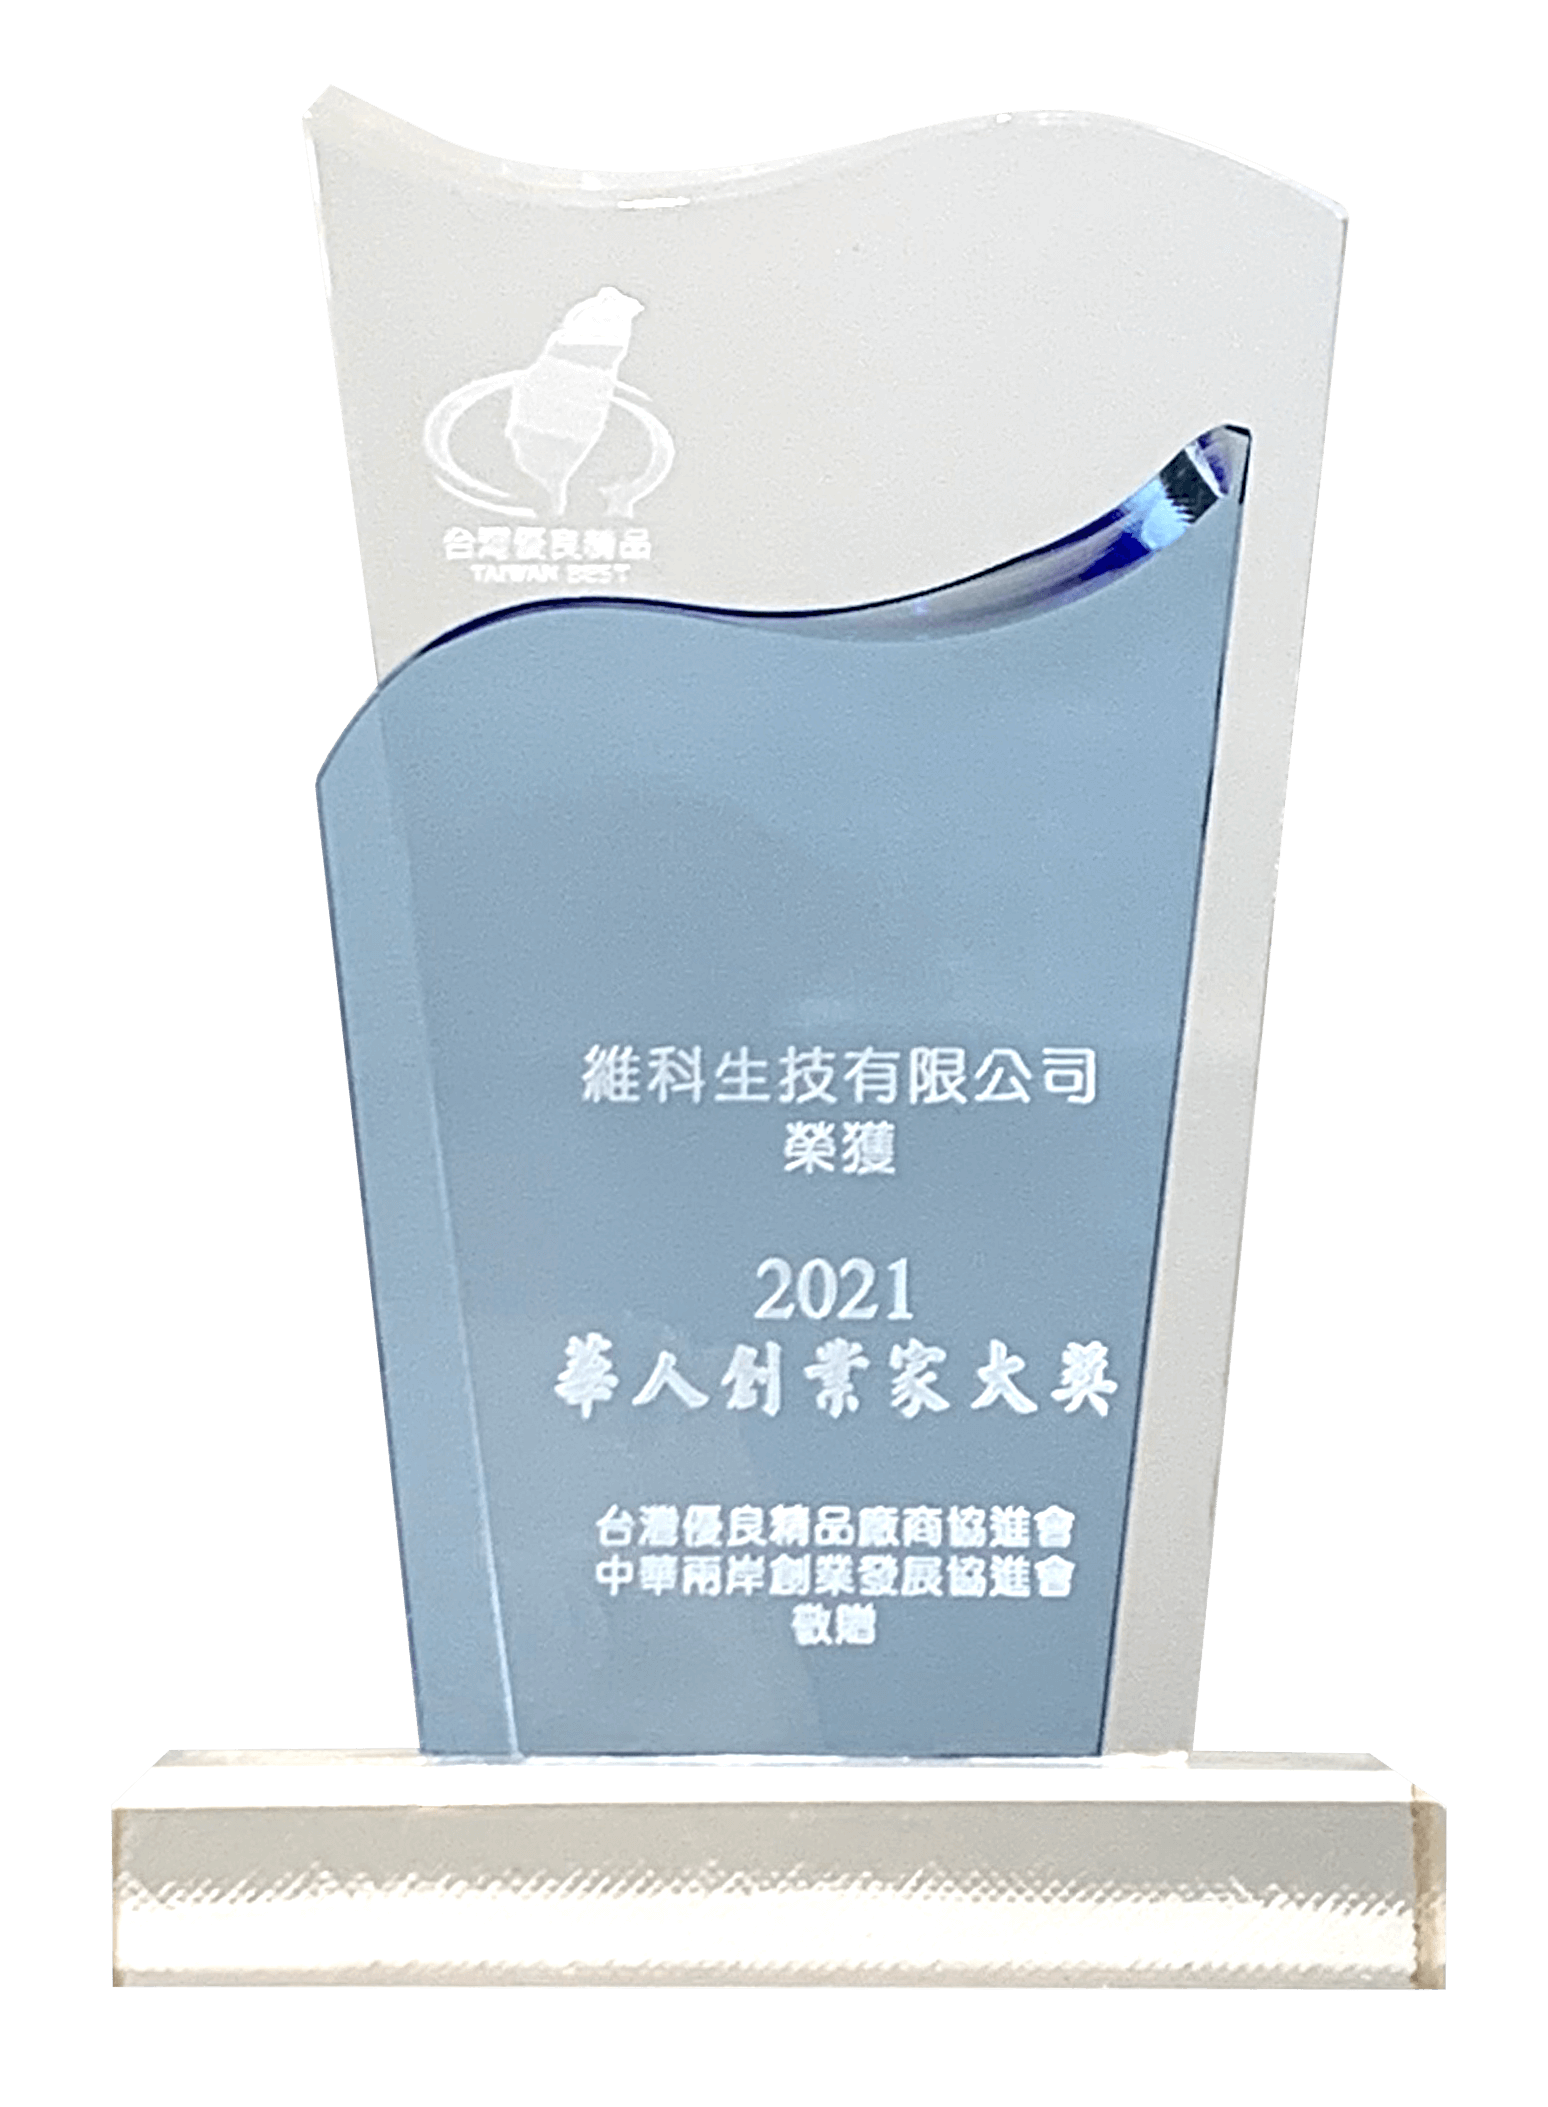 婕樂纖2021華人創業家大獎